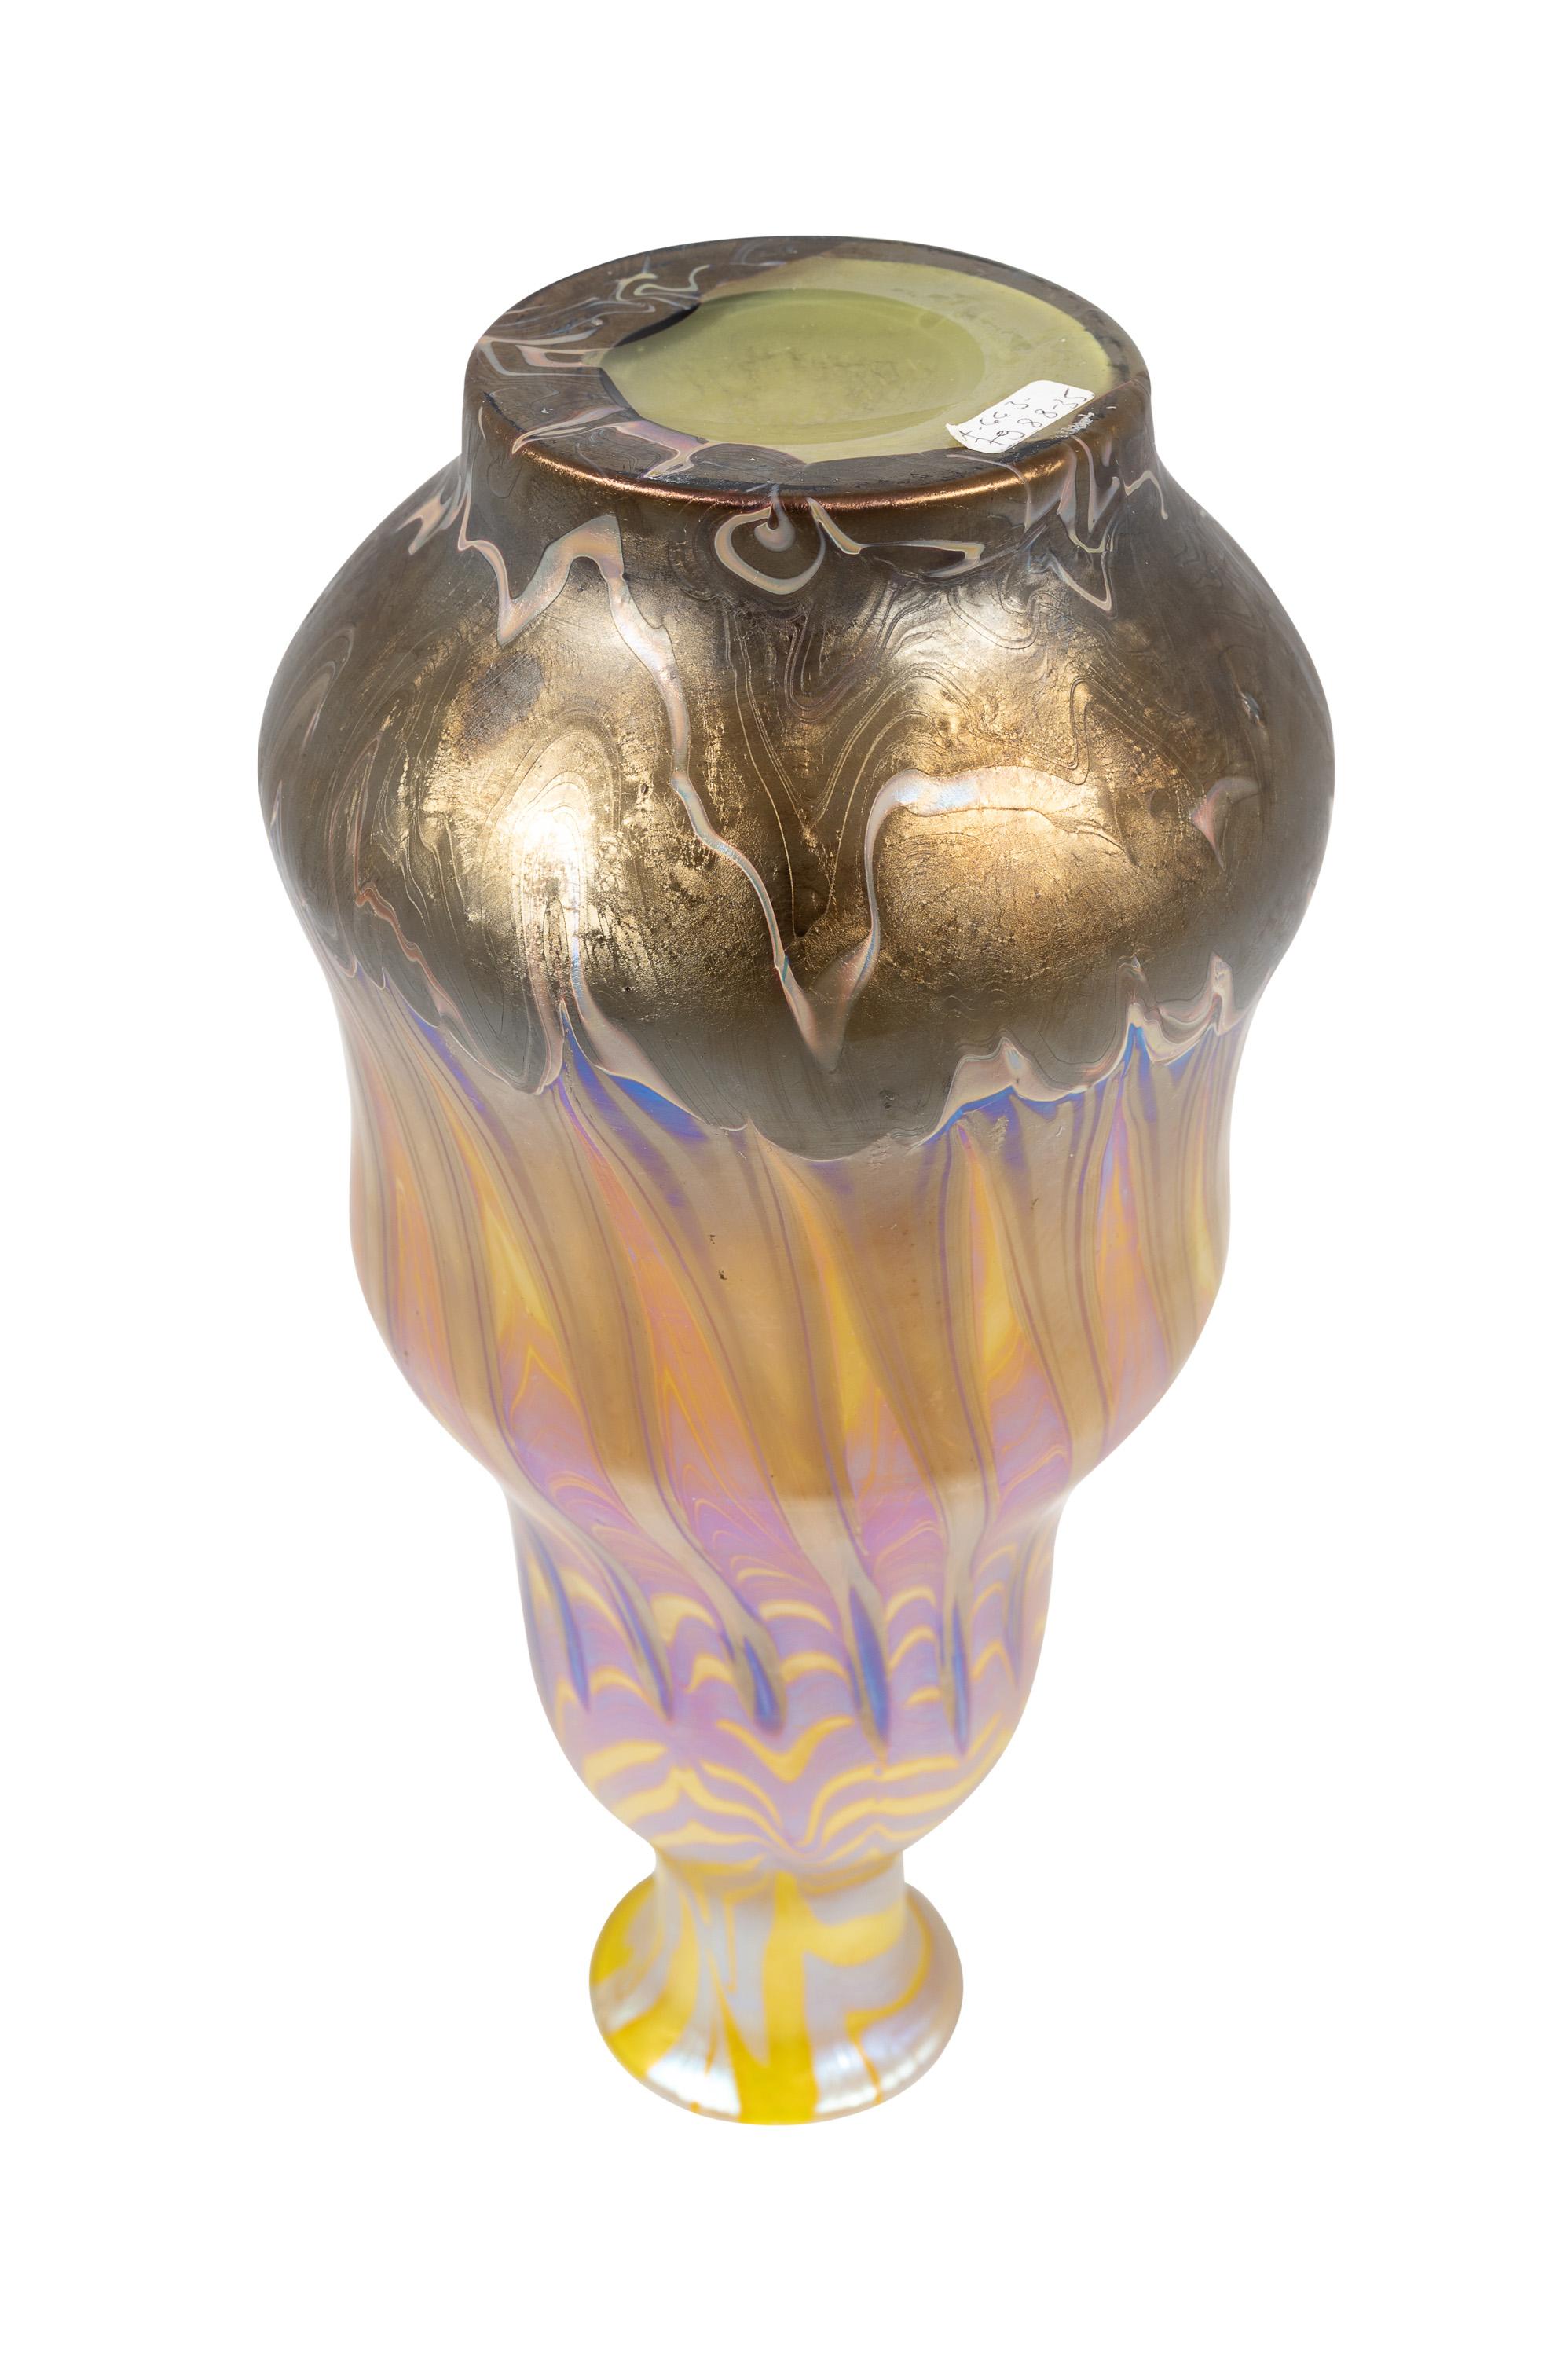 20th Century Bohemian Glass Vase Loetz circa 1900 Yellow Purple Art Nouveau Jugendstil Signed For Sale